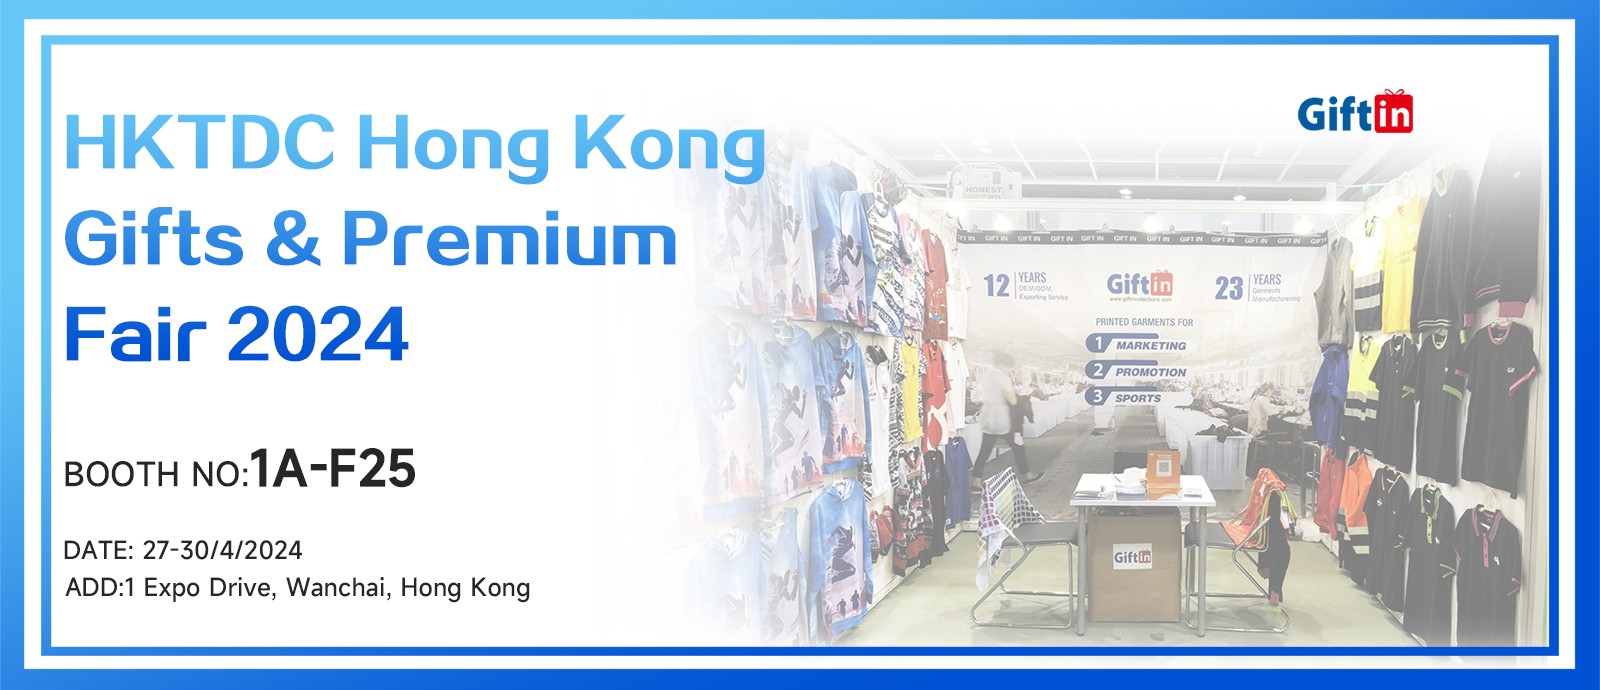 Гонконгская ярмарка подарков и премиум-класса HKDTC 2024